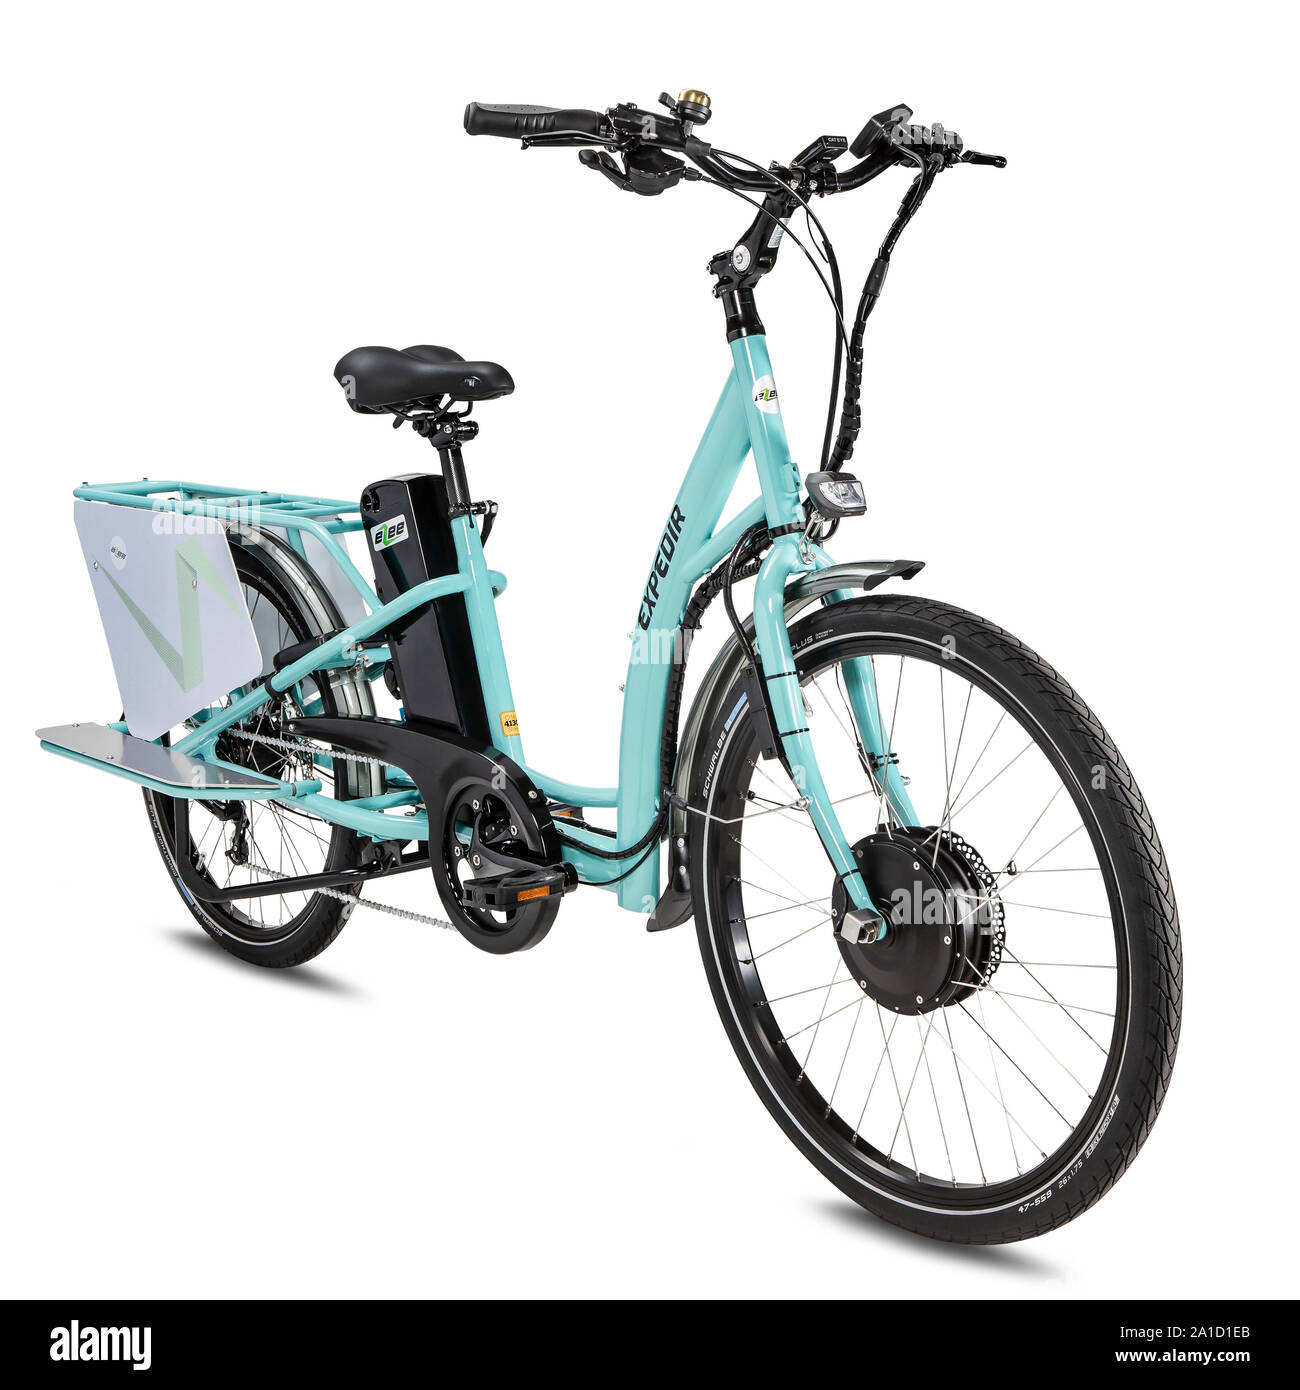 Lo stile del prodotto biciclette elettriche isolate contro uno sfondo bianco. Foto Stock